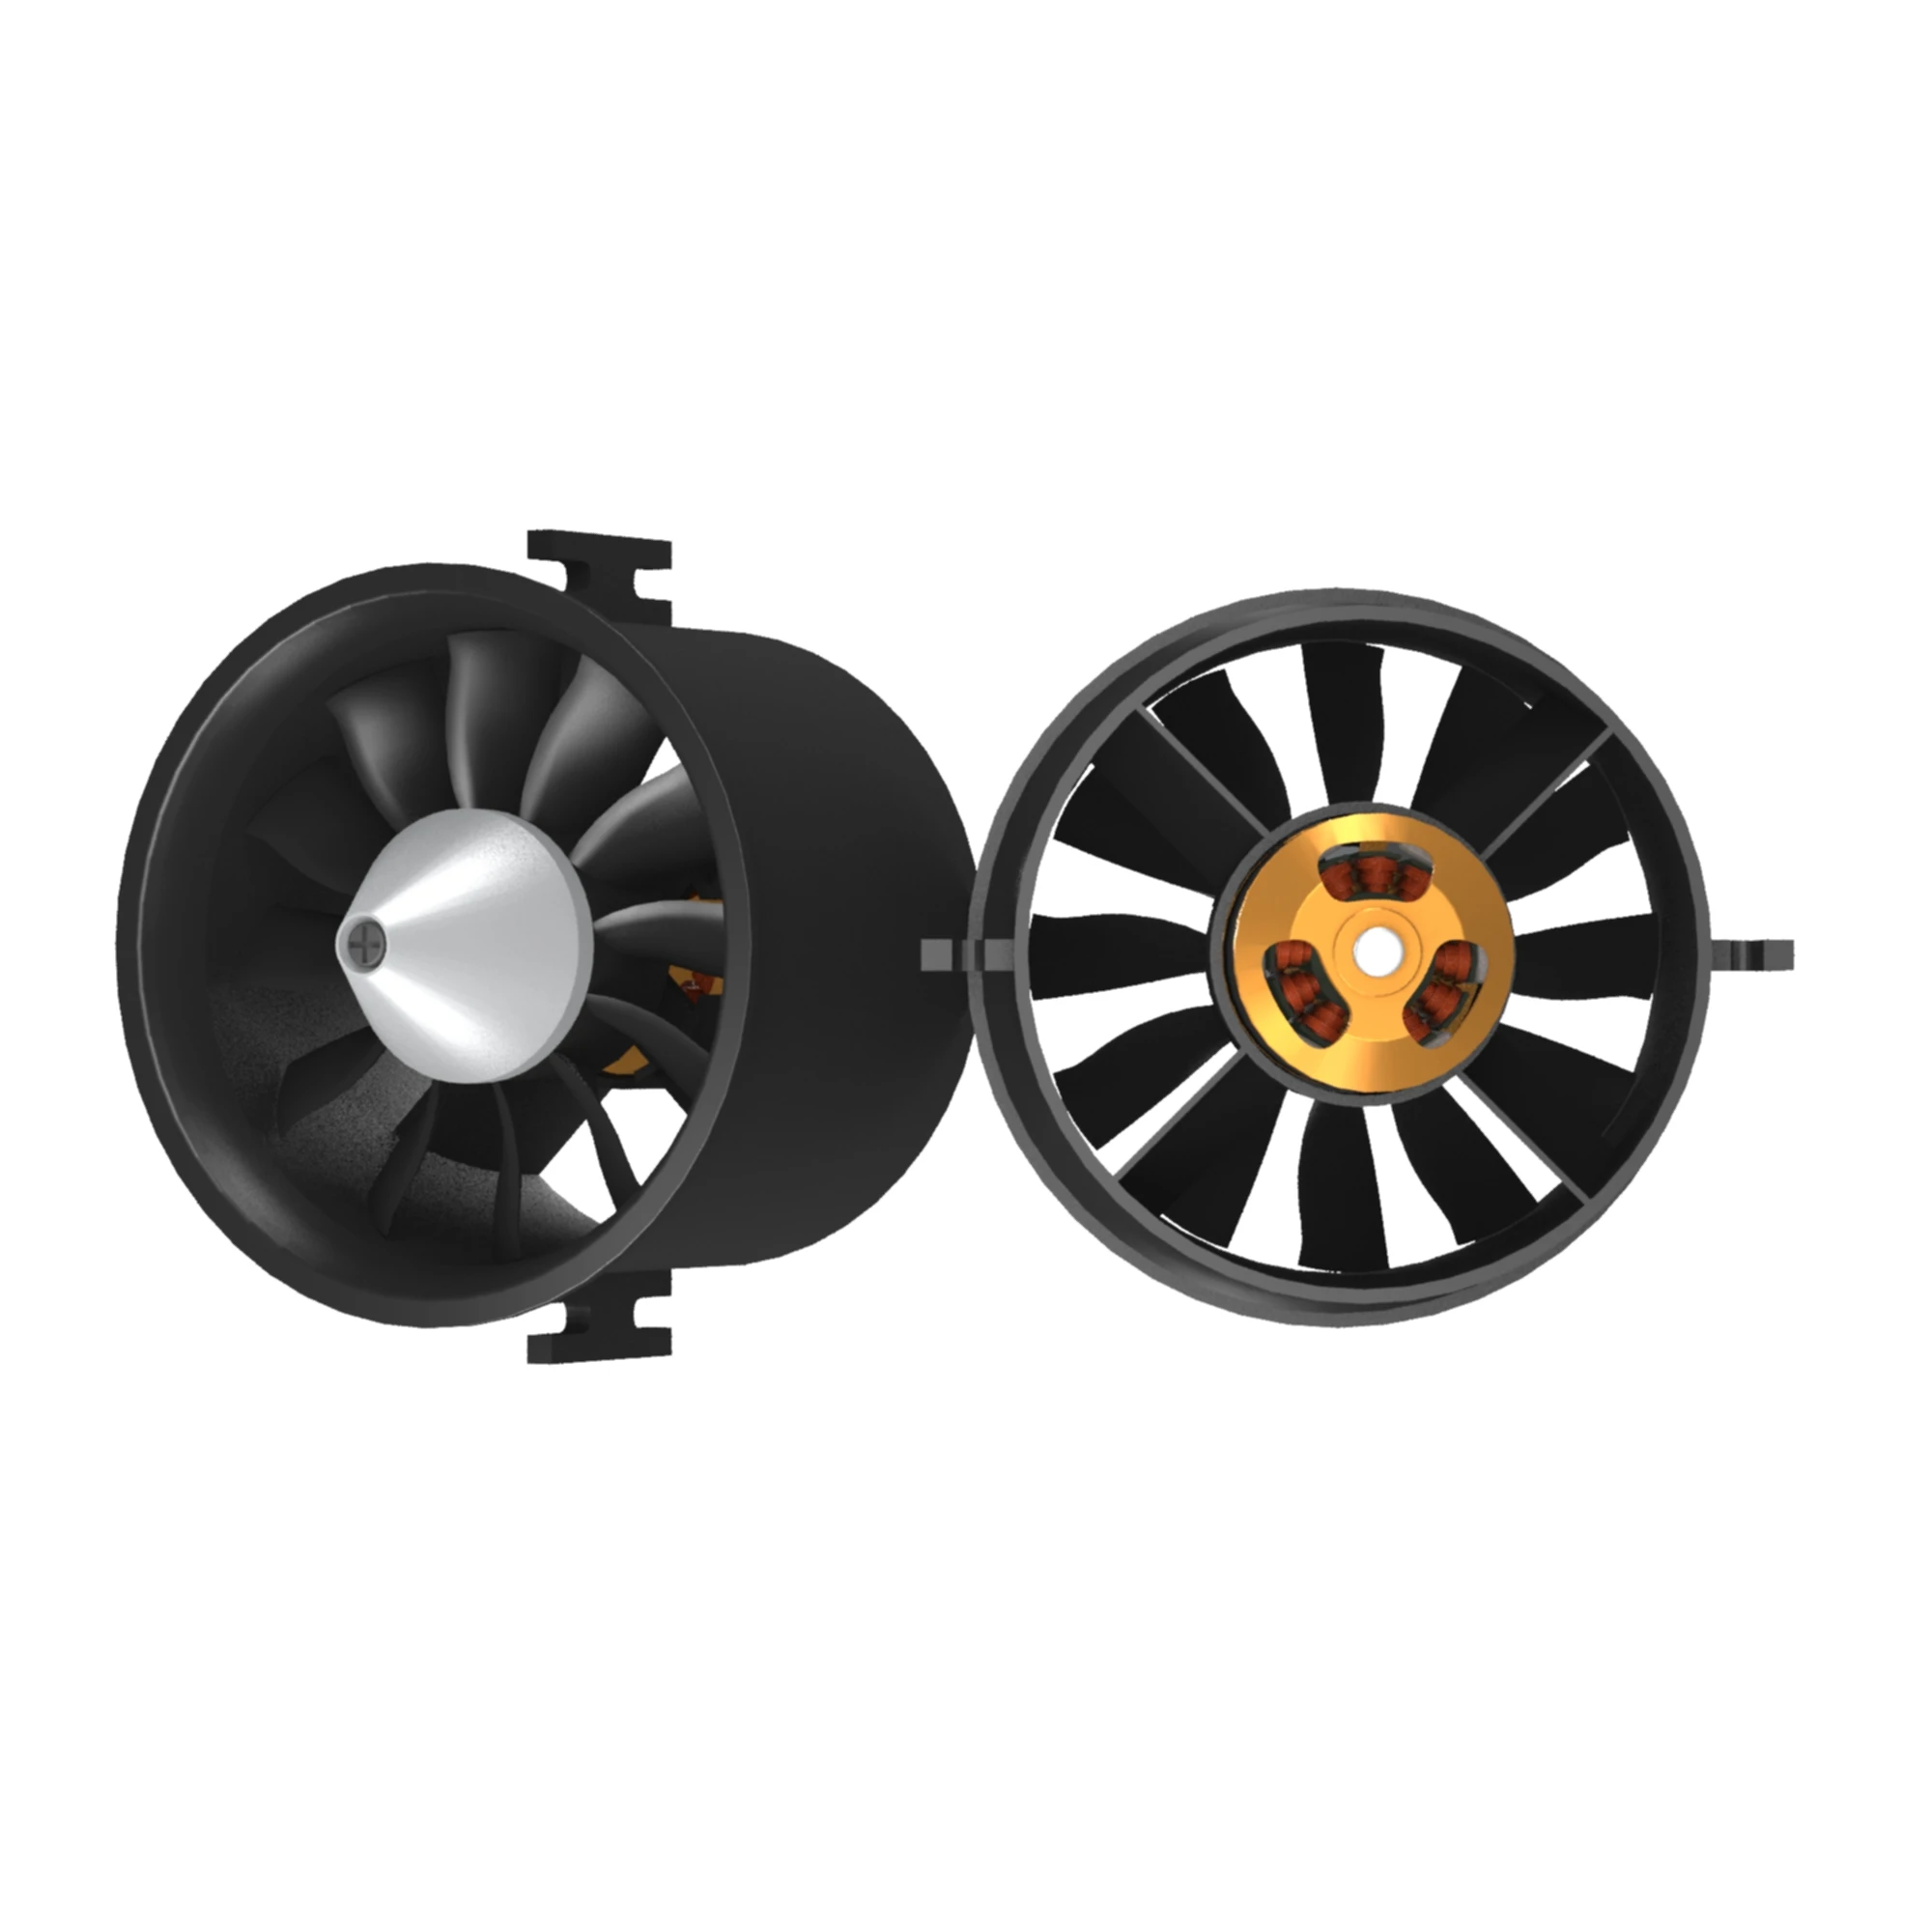 70mm Edf Duct Fan Brushless Motor | Ducted Fan Motor | Electronic Ducted Fan - 70mm - Aliexpress